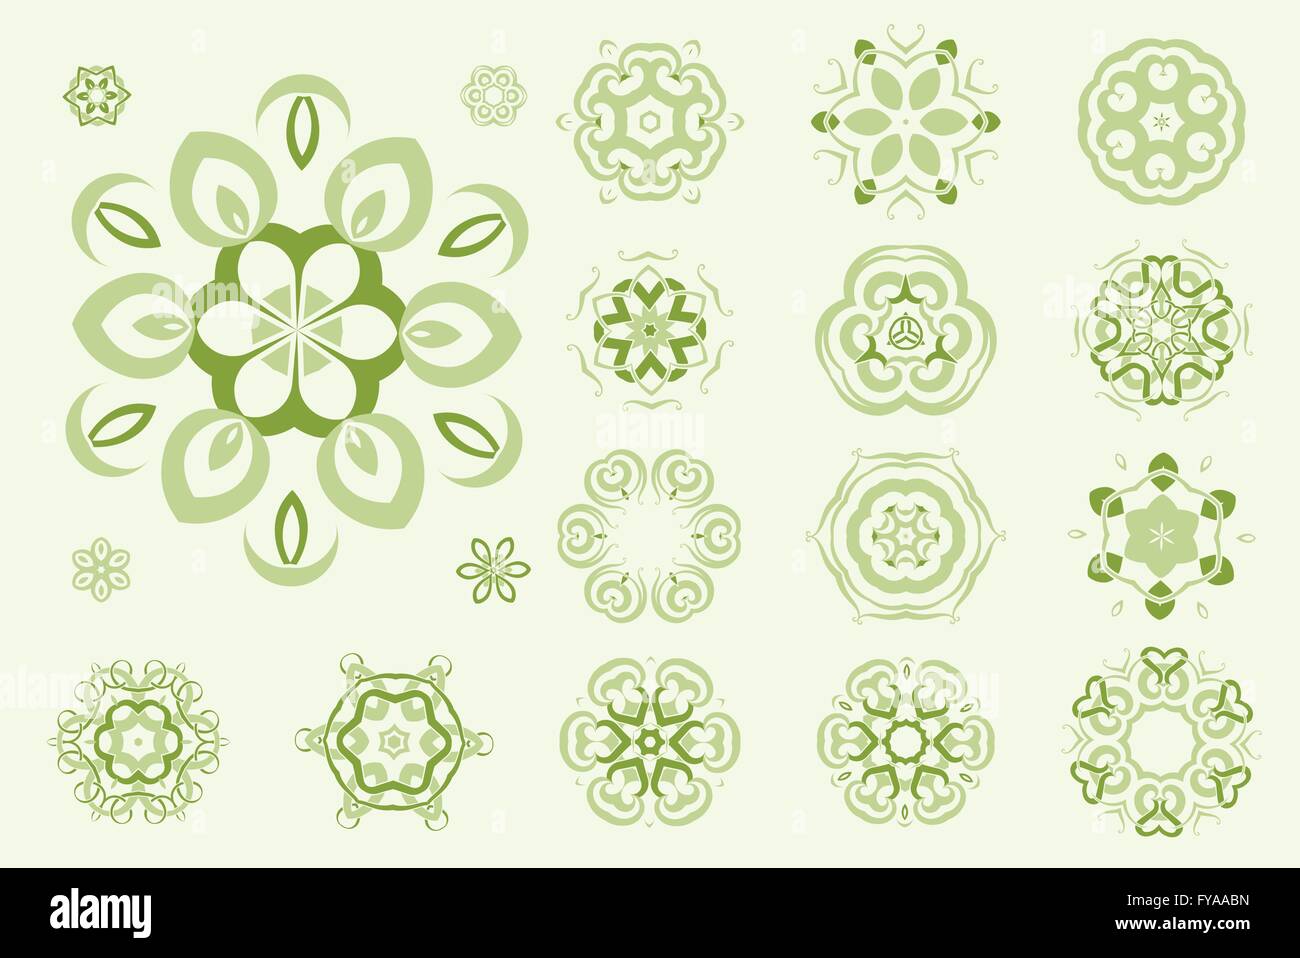 Celtic Knotwork tattoo art, circular mandalas, floral pattern and baroque retro ornaments vector design set. Stock Vector